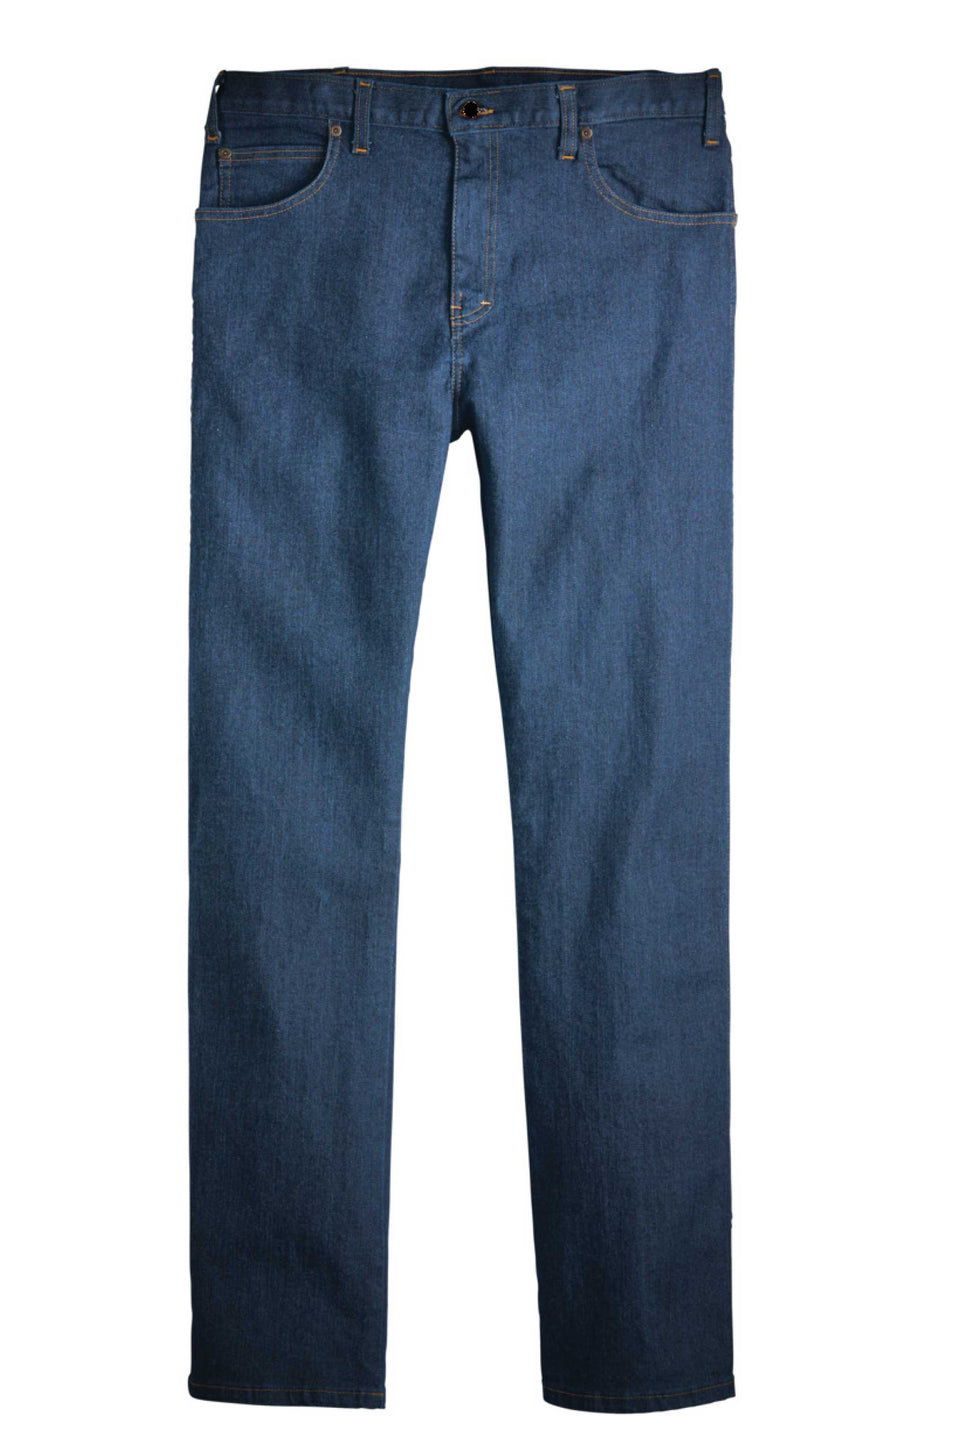 Men's Industrial 5-Pocket Jean - Rinsed Indigo Blue – Renaissance Wardrobe